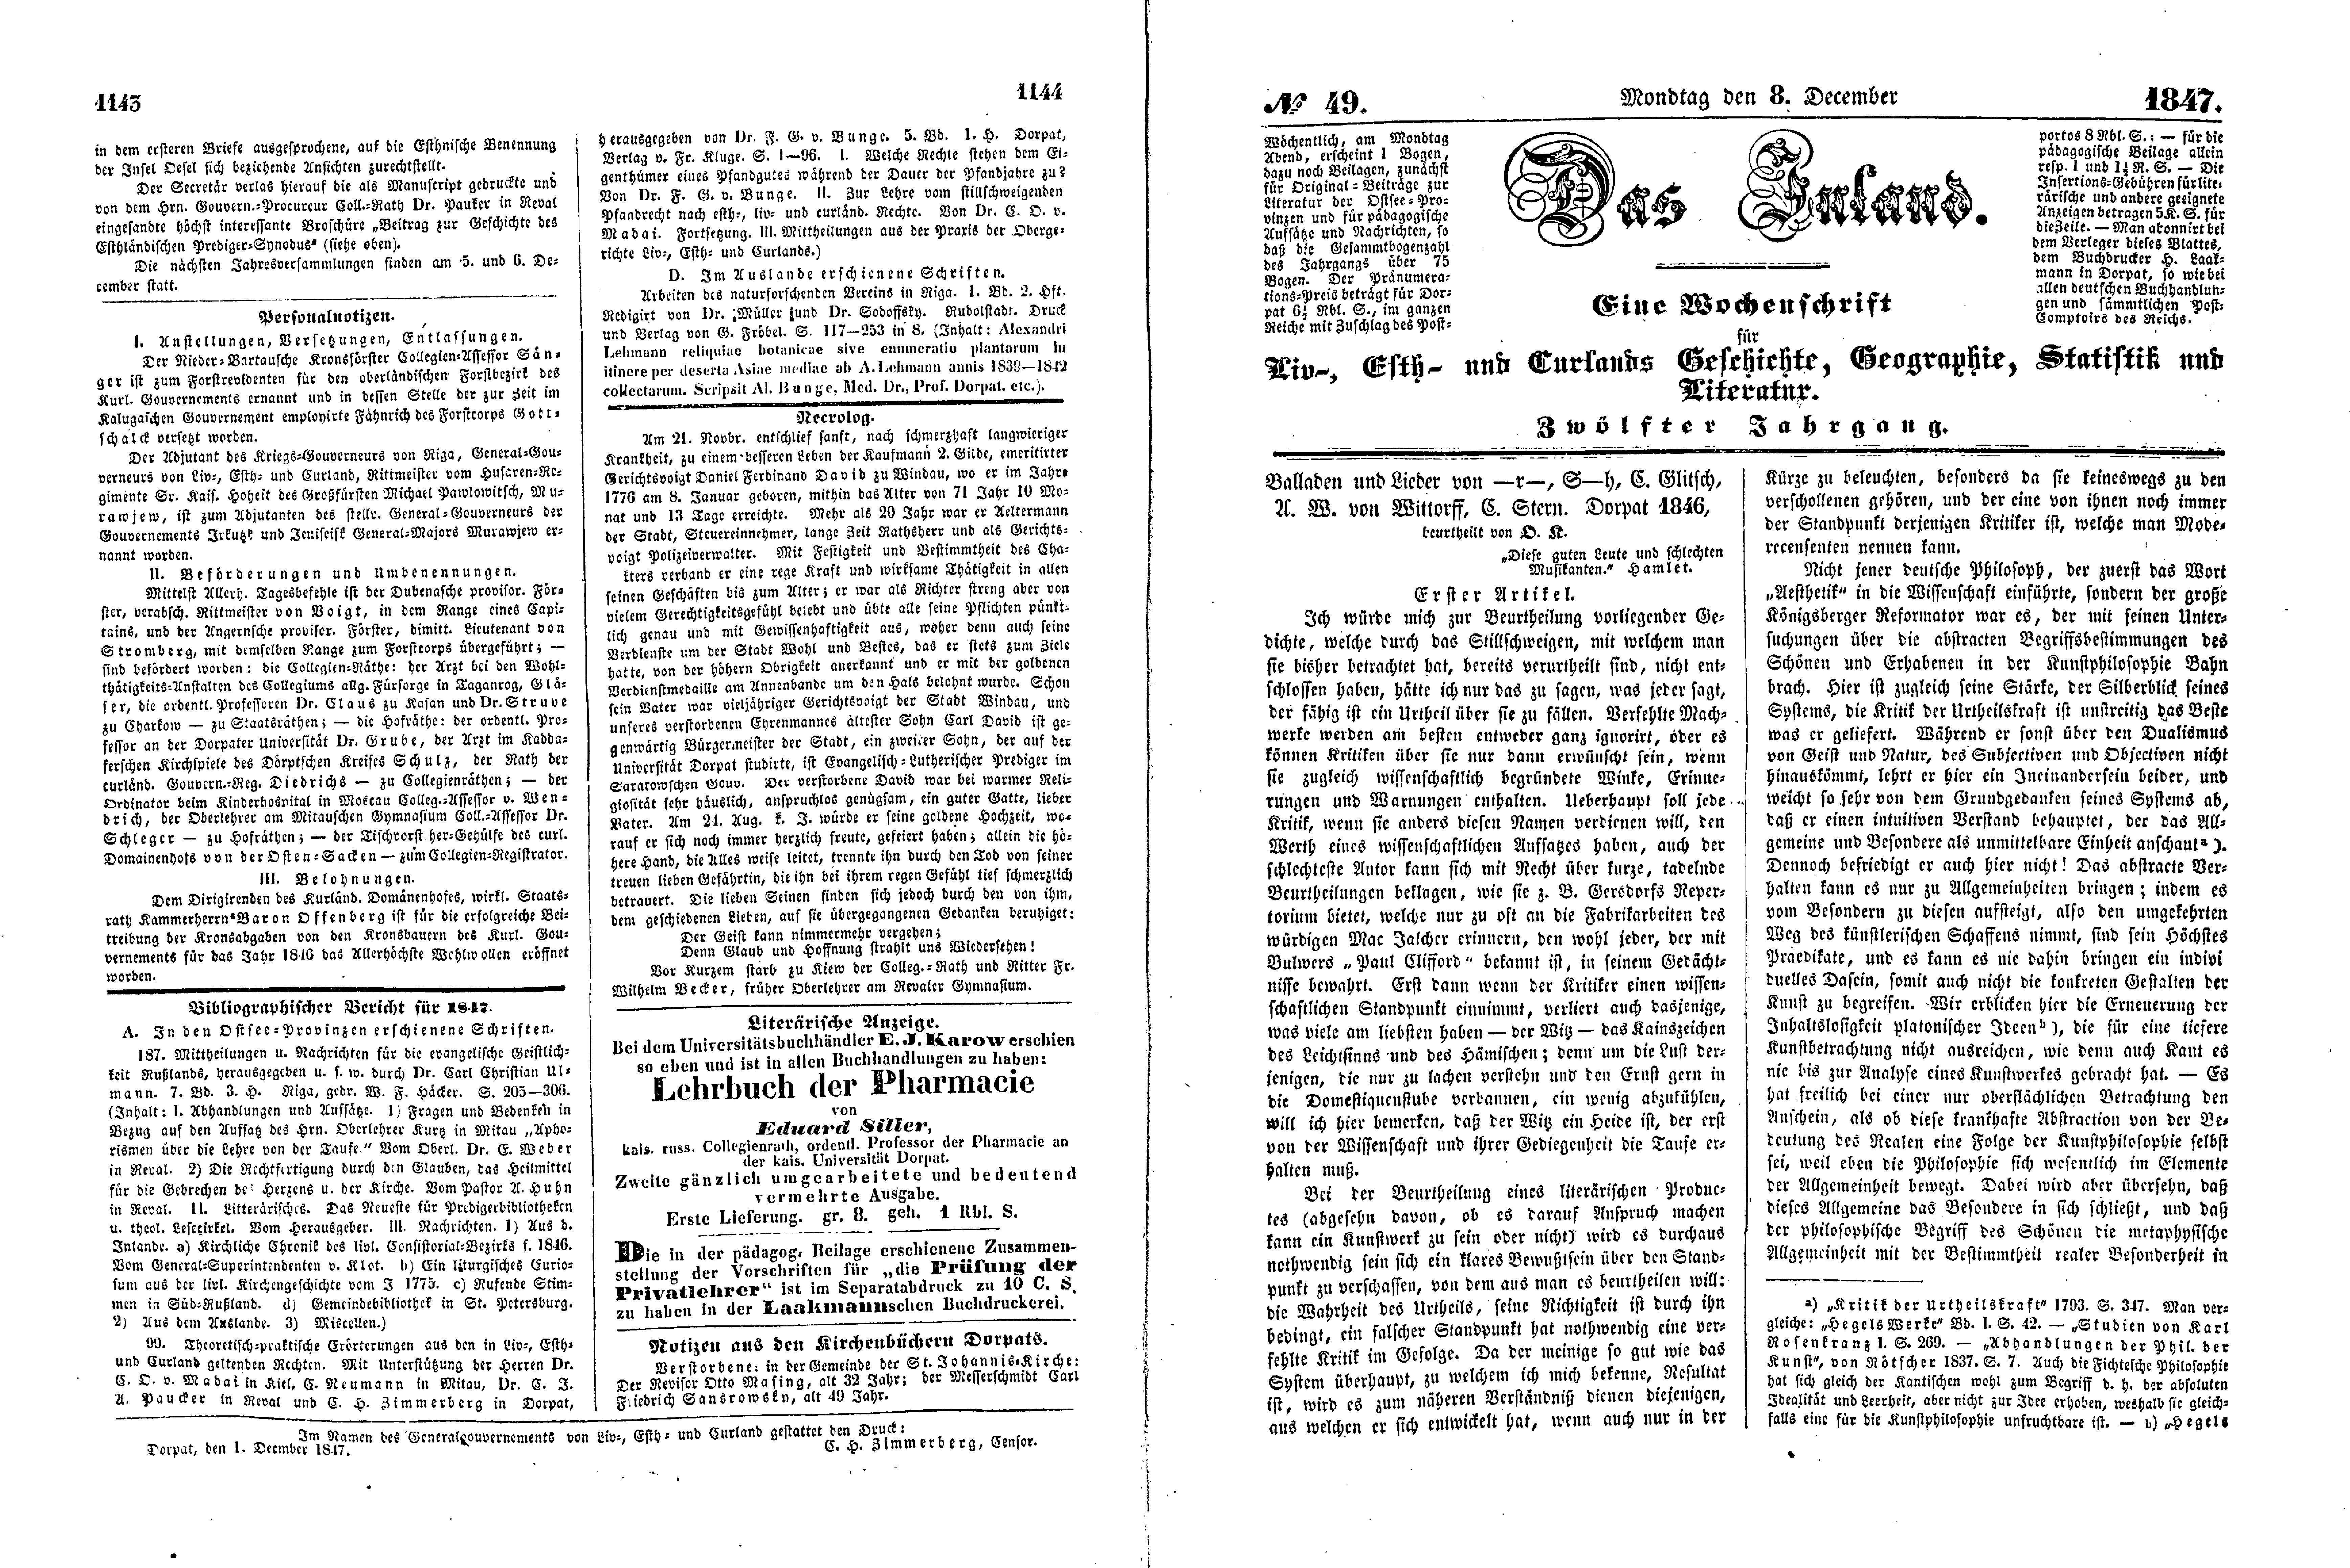 Balladen und Lieder von -r-, S-h, C. Glitsch, A. W. von Wittorff, C. Stern [1] (1847) | 1. (1143-1146) Основной текст